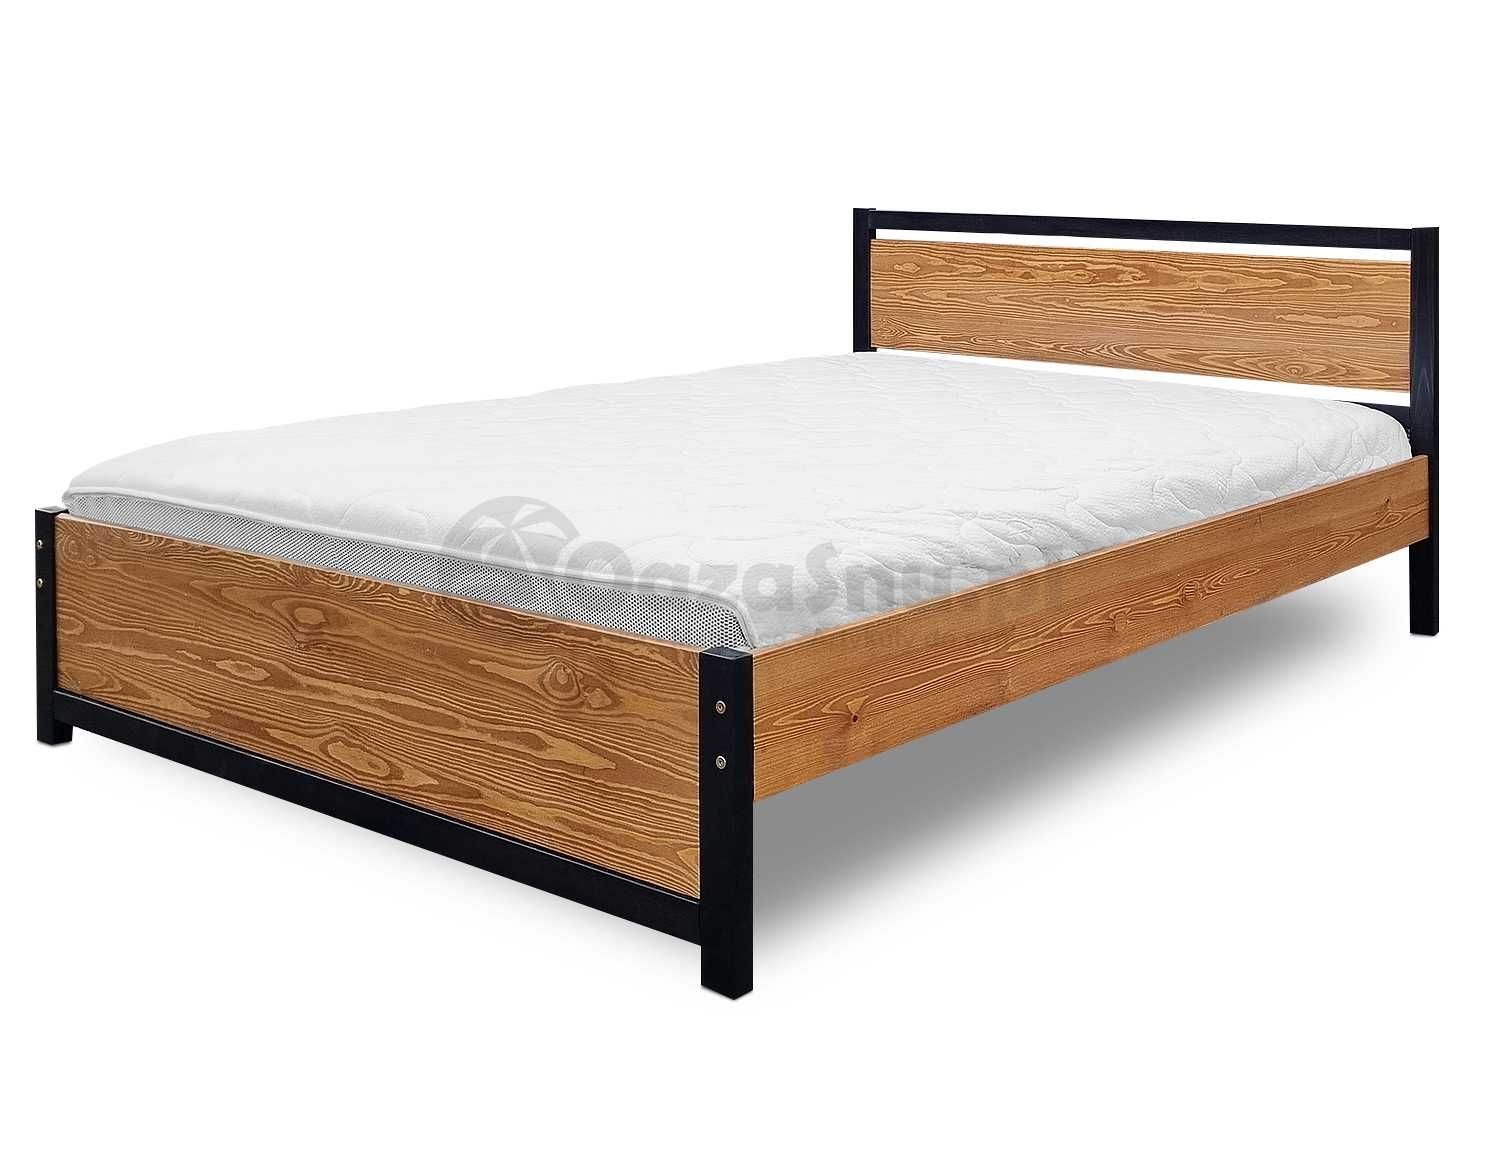 BELLI 140x200 łóżko mocne drewno wysokie +150 kg dla wysokich osób